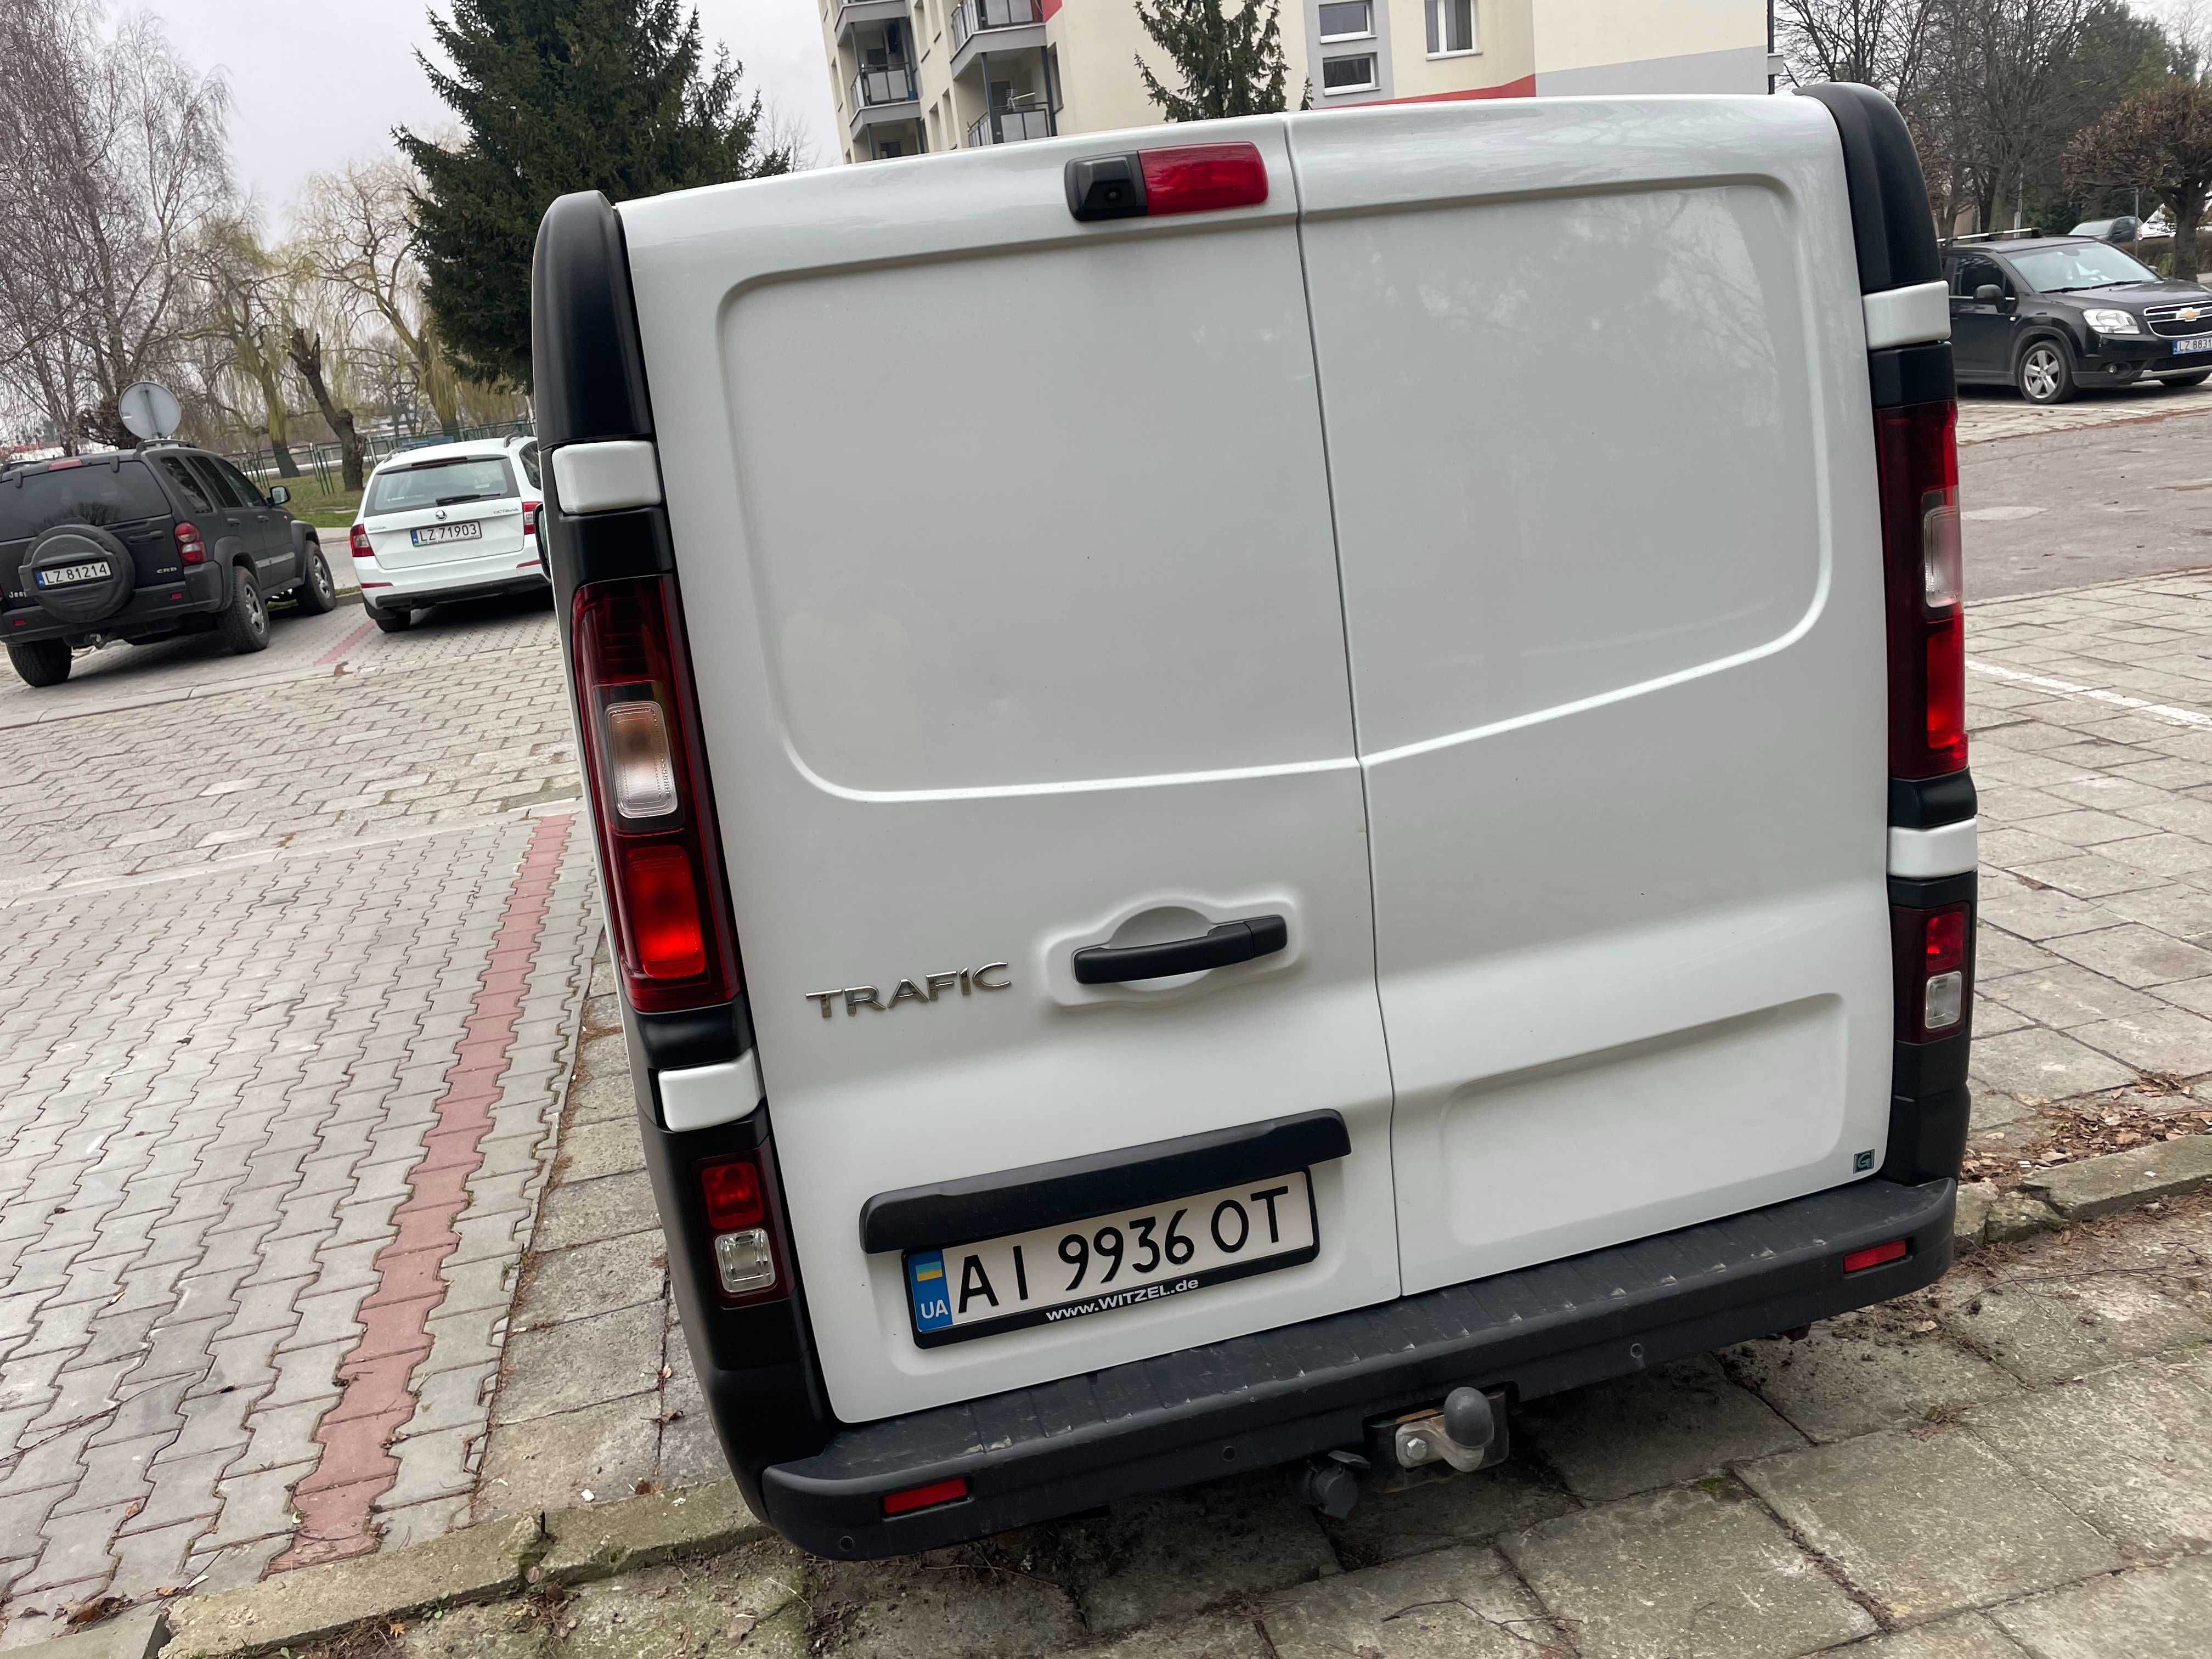 Renault Trafic 1,6 дизель 2019 рік пробіг 89000 км вантажний ЄВРО 6